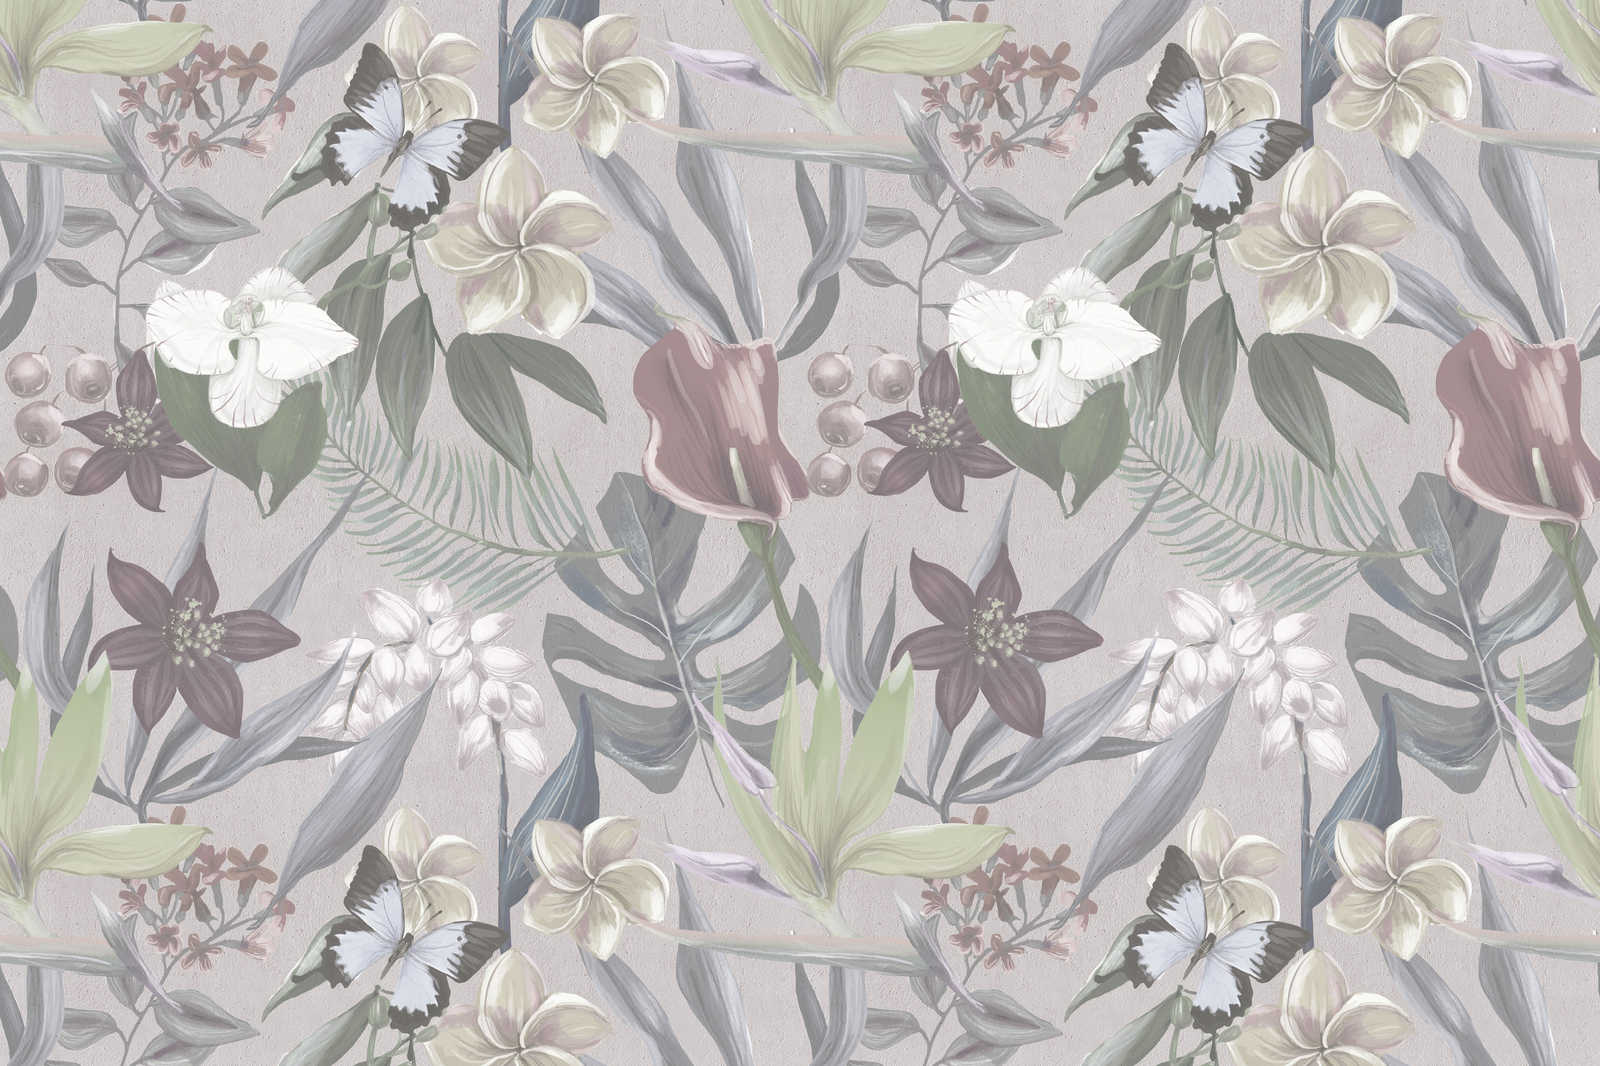             Florales Dschungel Leinwandbild gezeichnet | grau, weiß – 1,20 m x 0,80 m
        